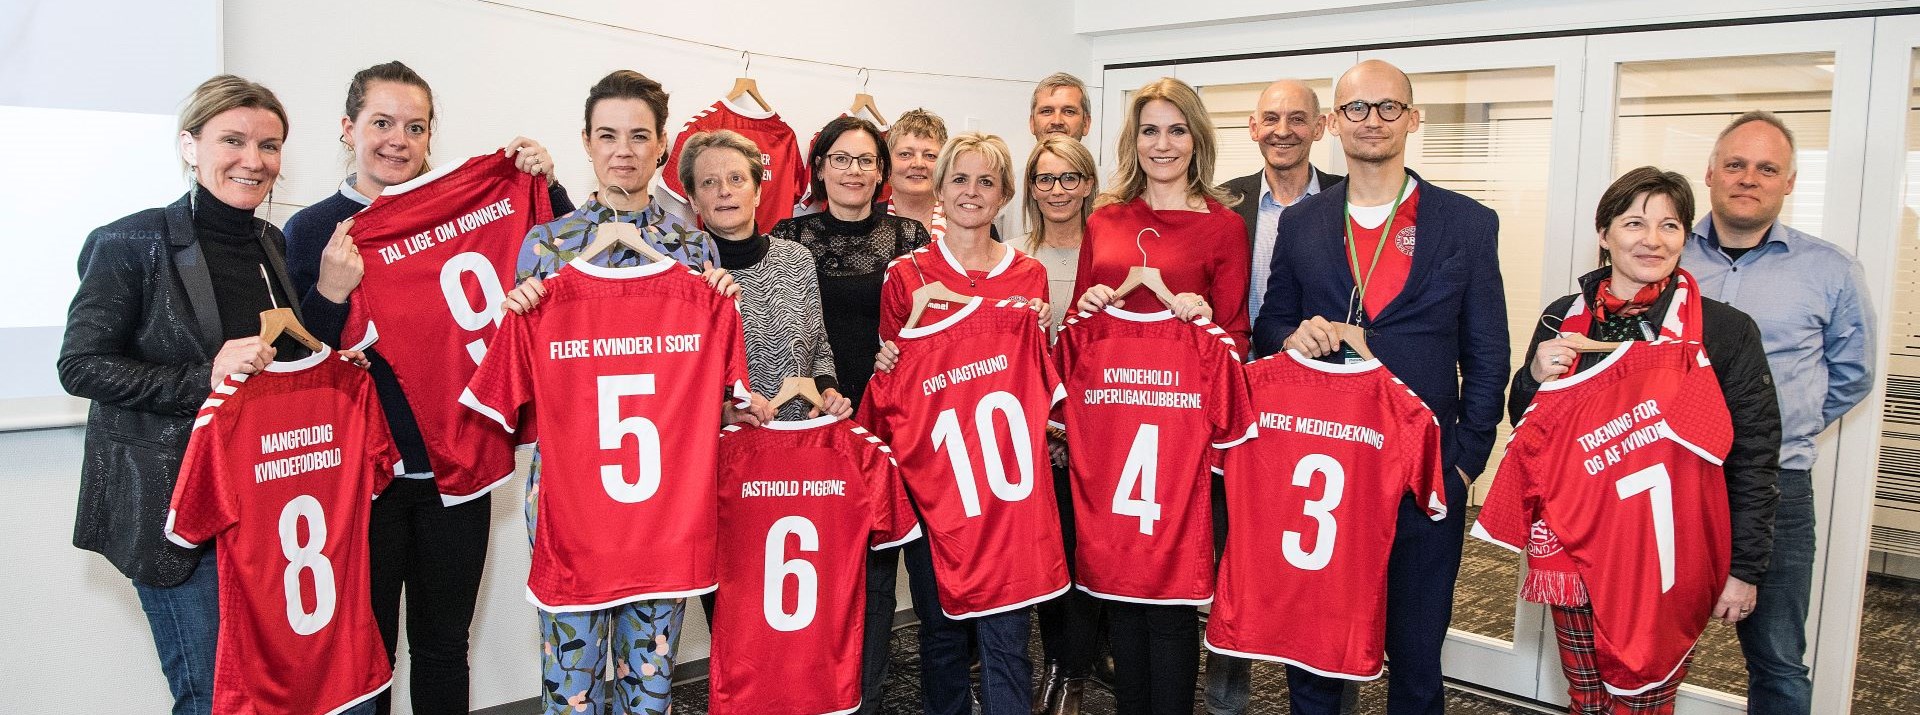 Nina Groes Skal Skabe Mangfoldighed I Dansk Fodbold